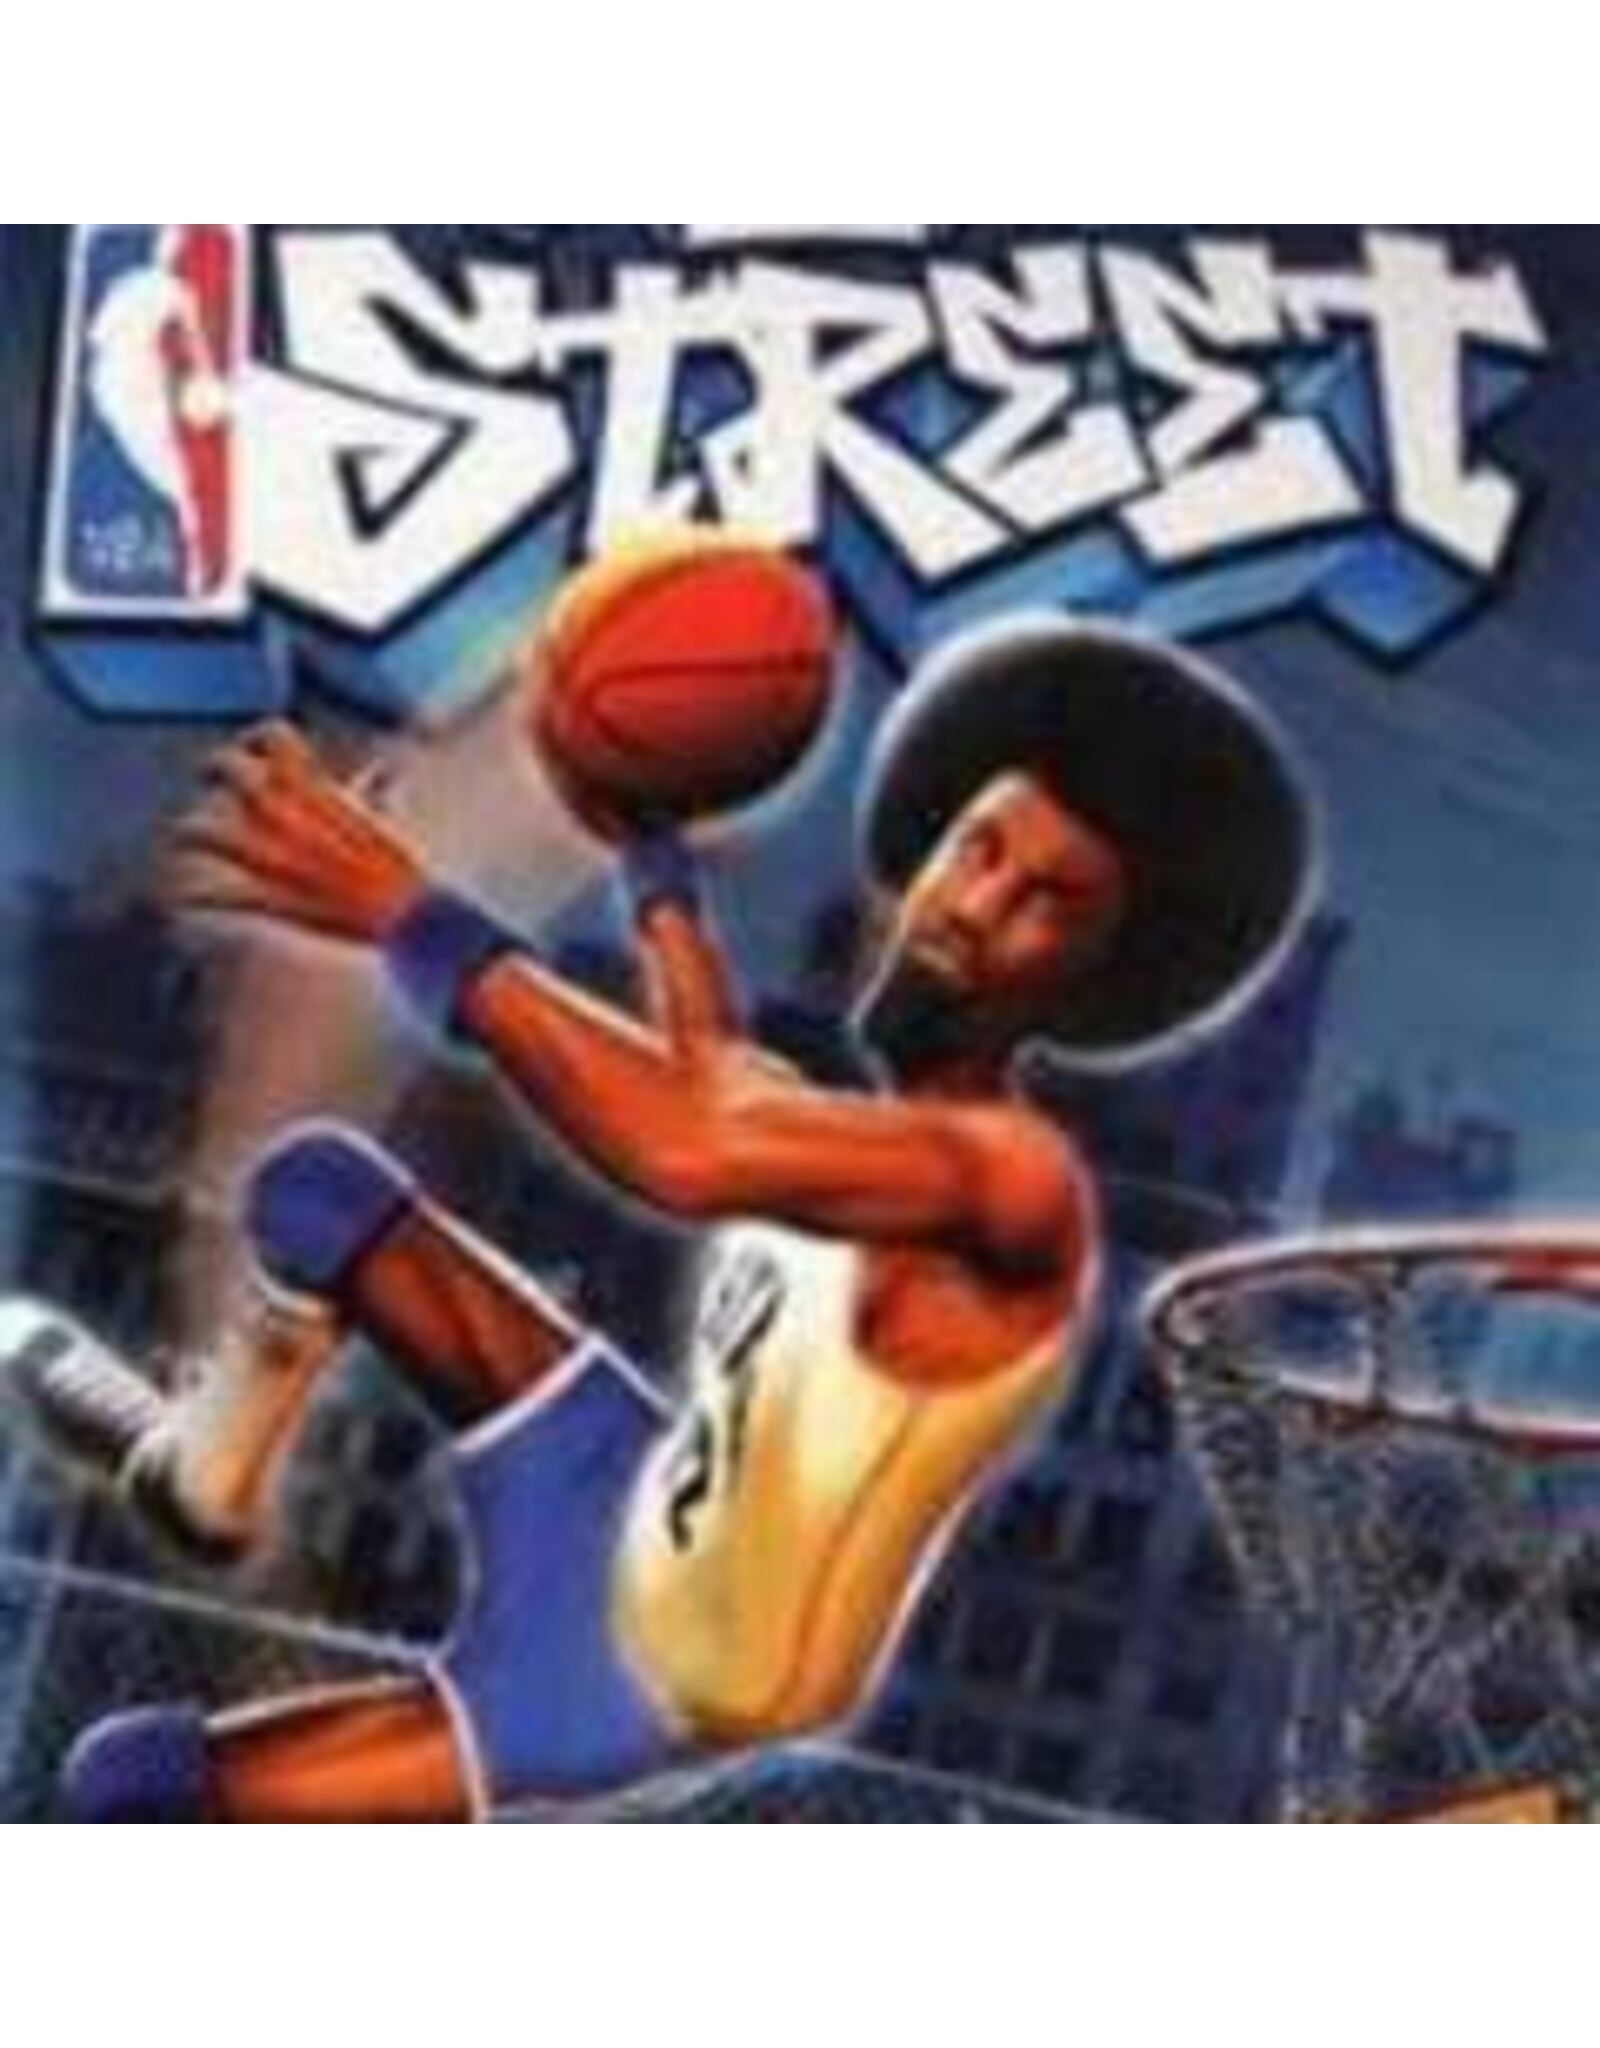 Playstation 2 NBA Street (No Manual)